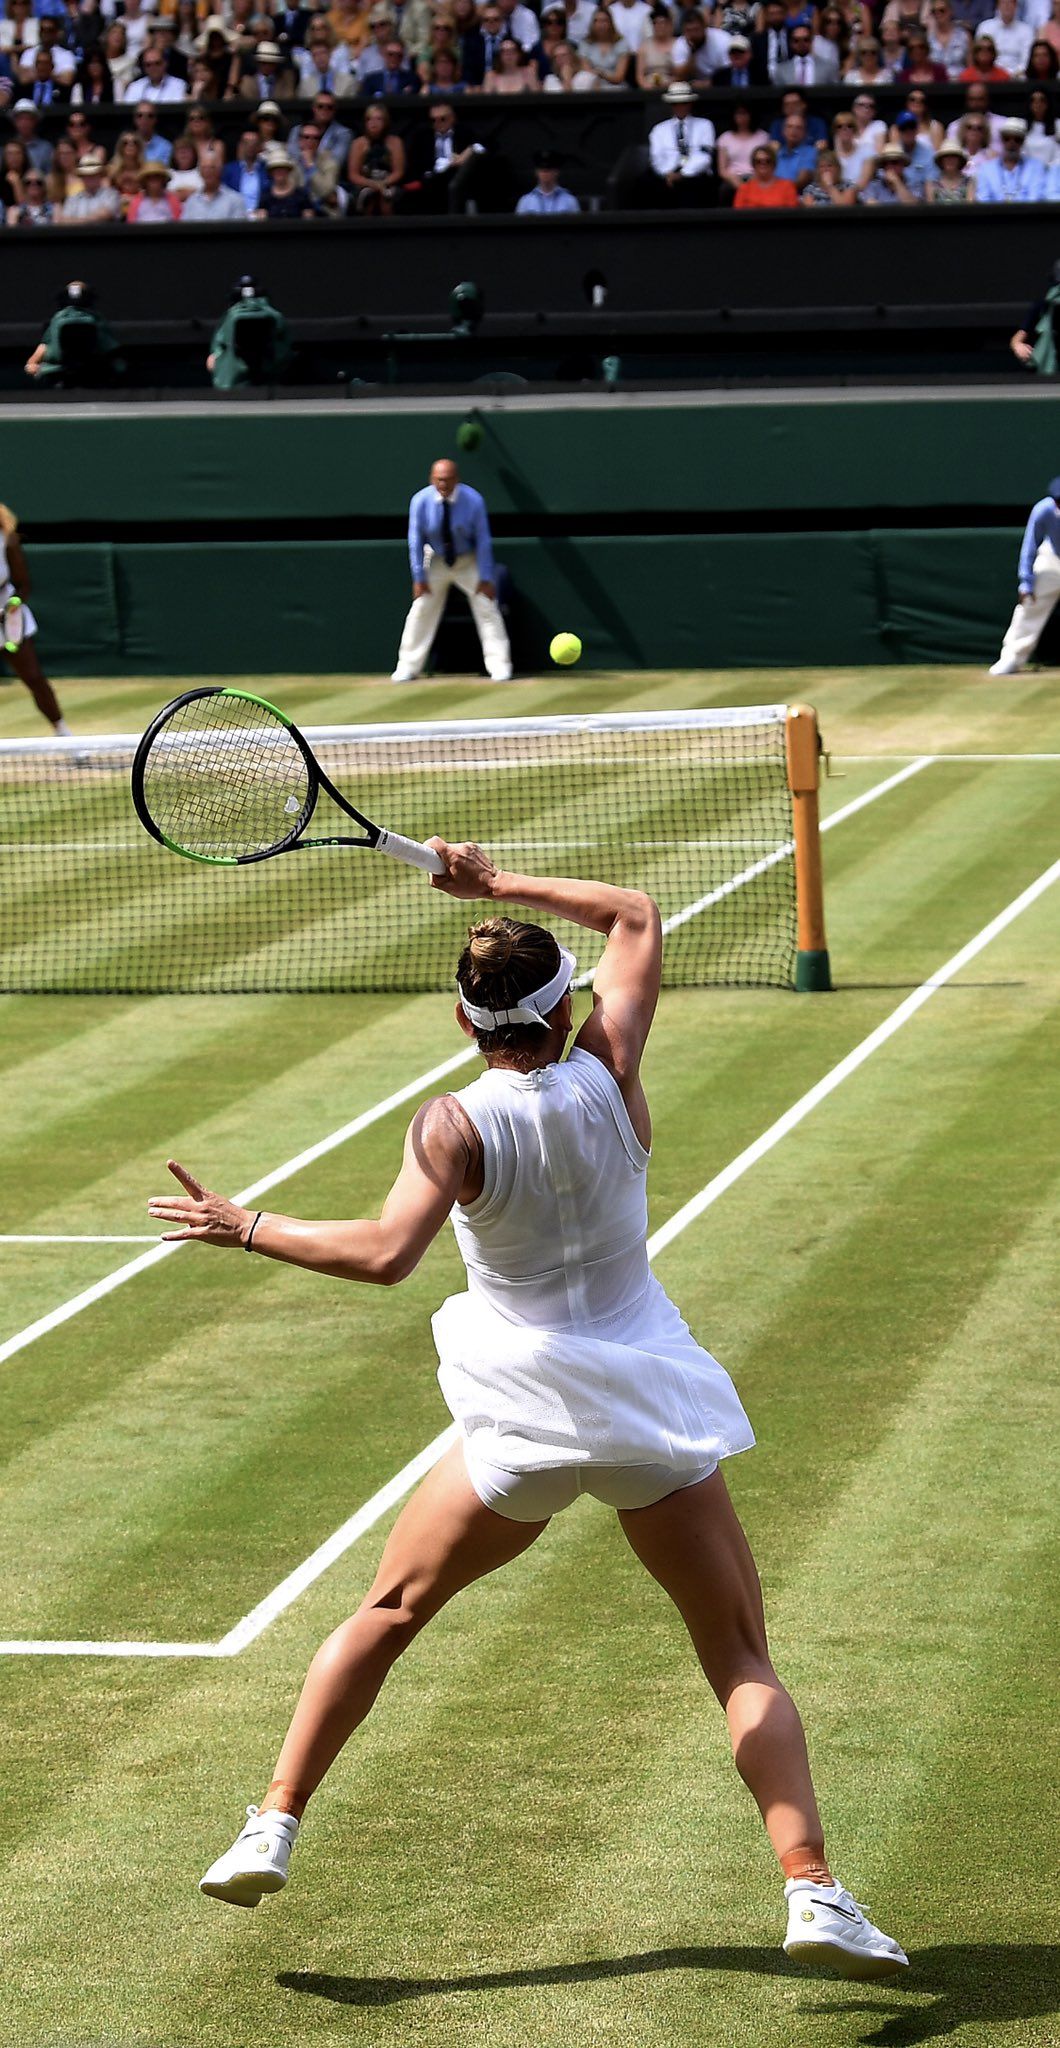 Primește wildcard doar la Wimbledon? Fostul antrenor al Simonei Halep explică circuitul invitațiilor oferite la Grand Slam-uri_26